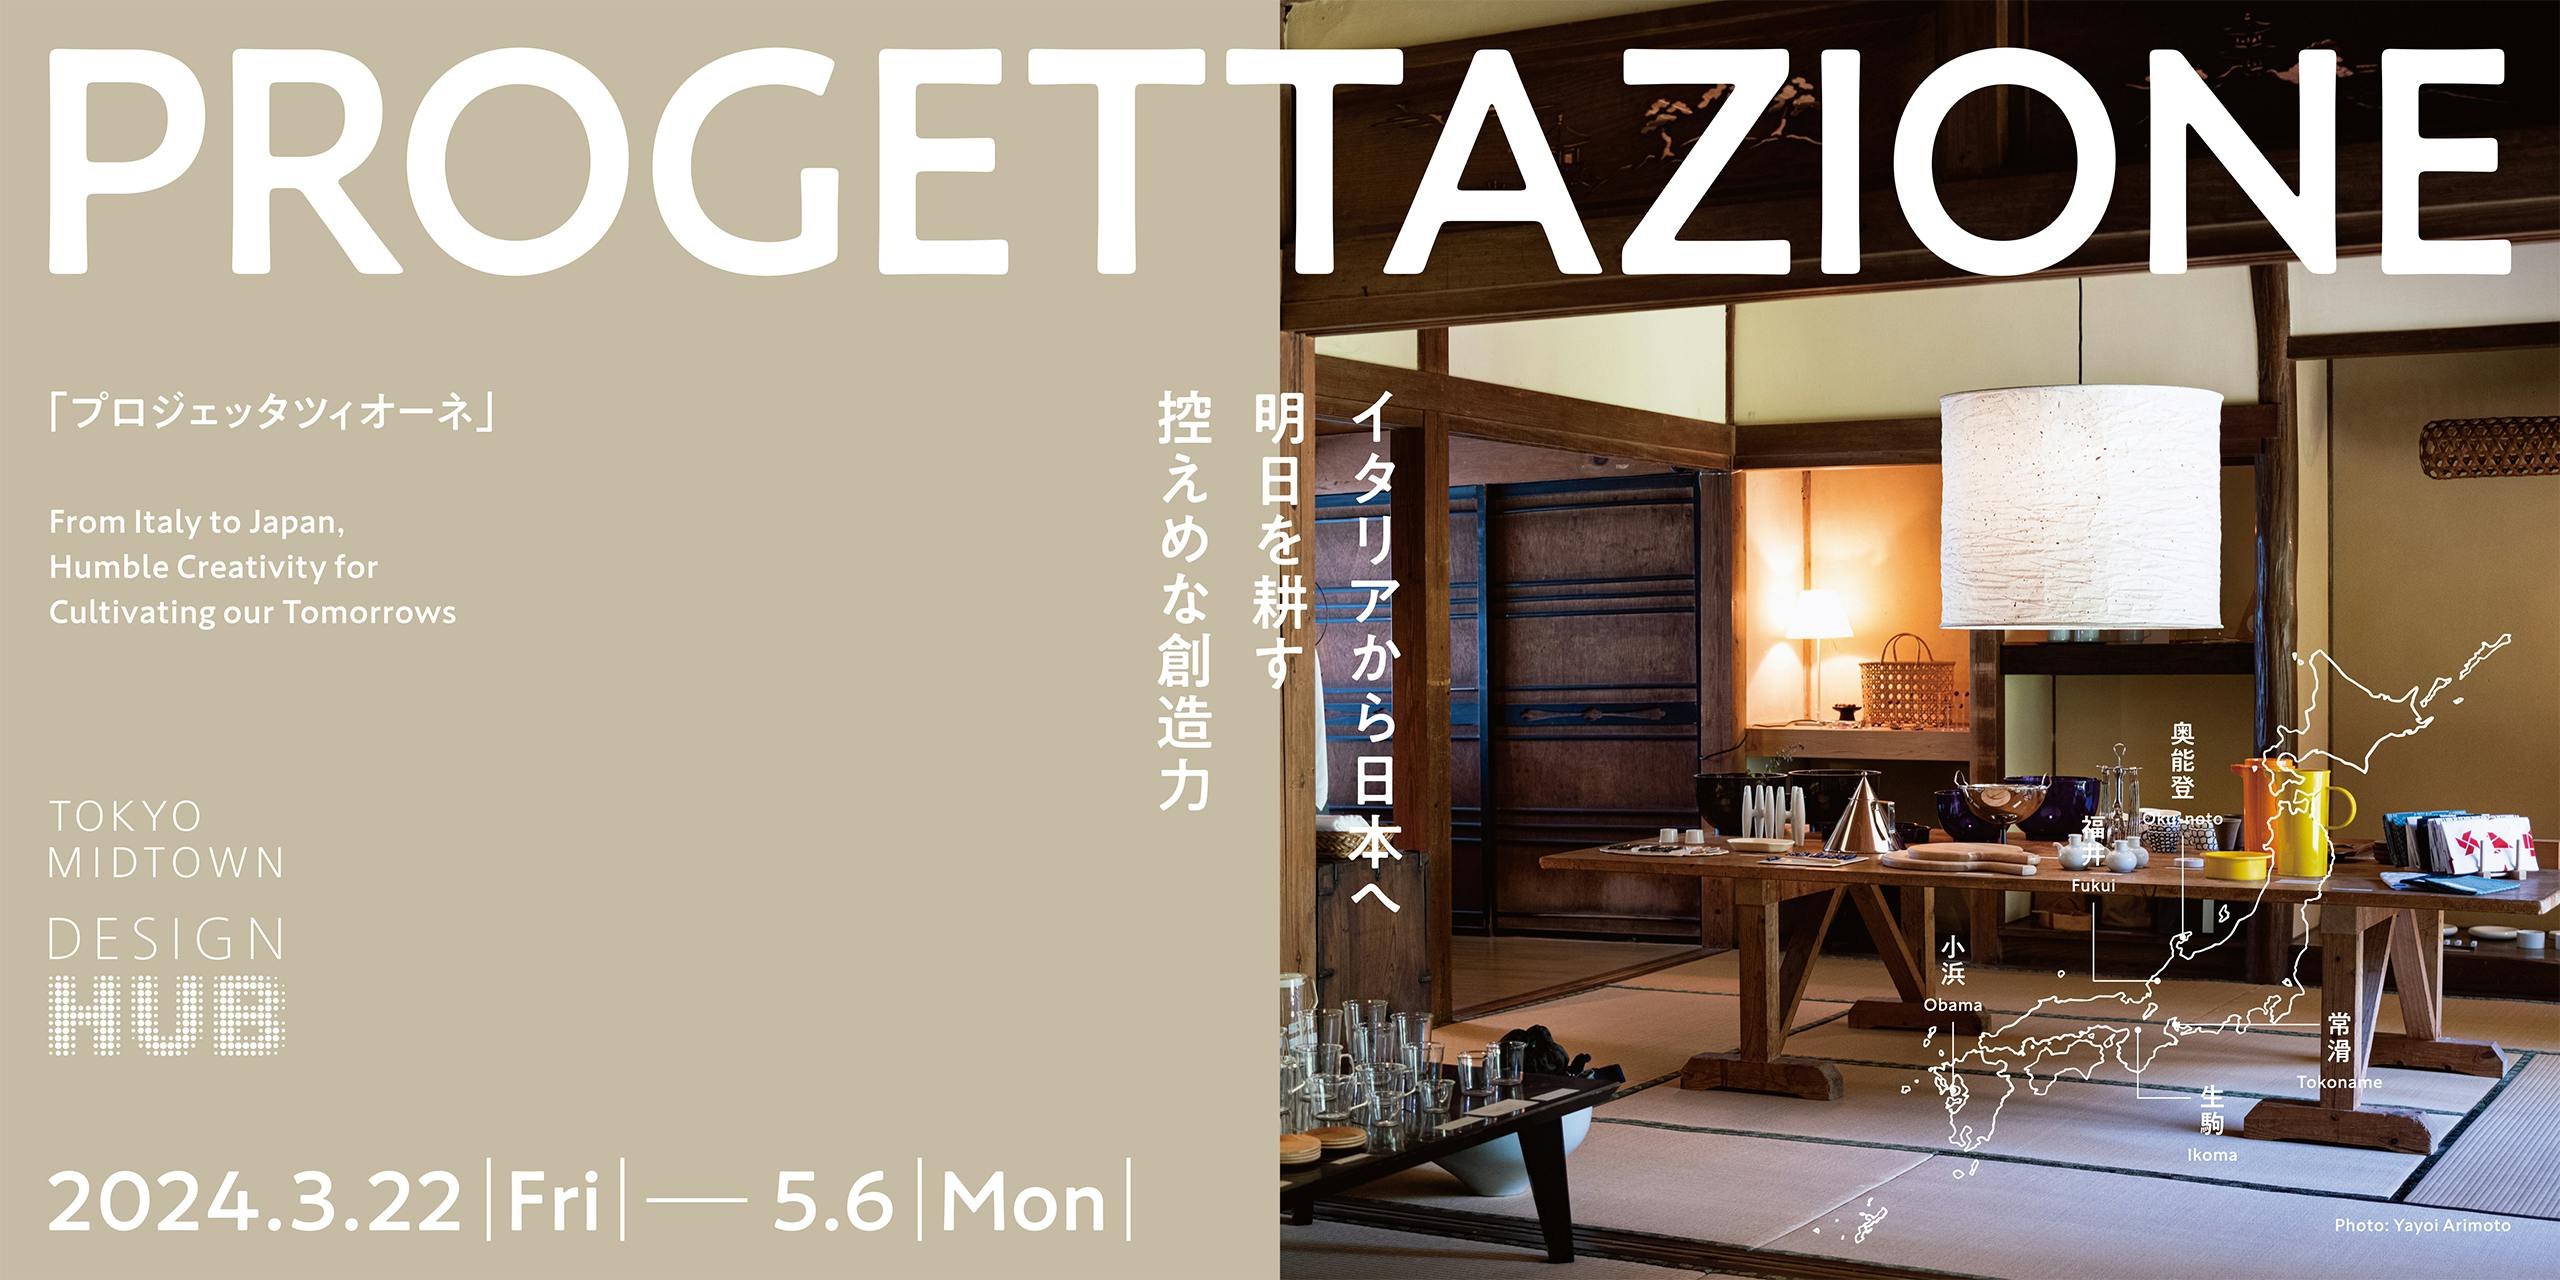 PROGETTAZIONE (プロジェッタツィオーネ) イタリアから日本へ 明日を耕す控えめな創造力